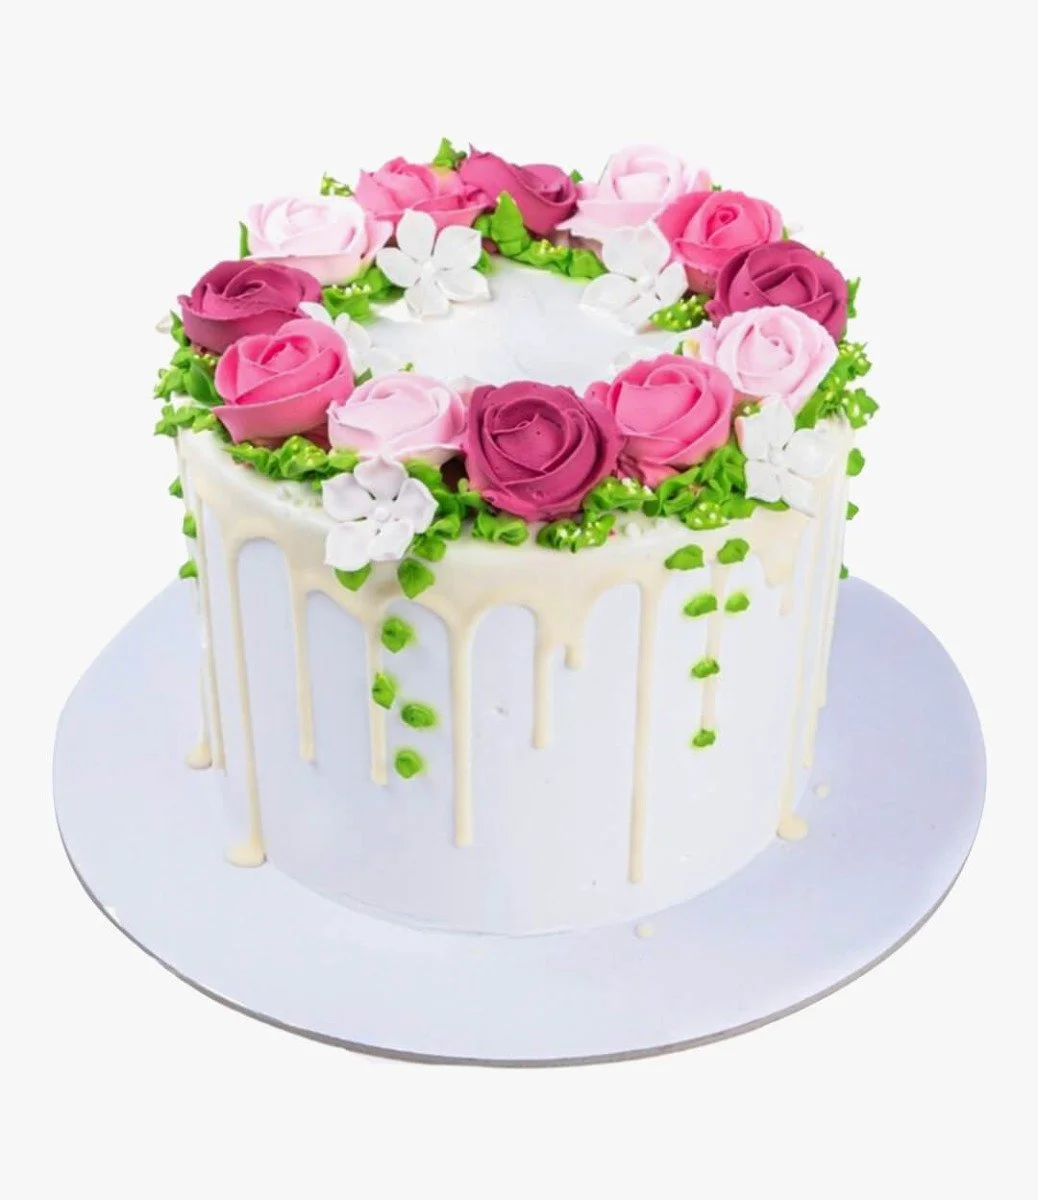 Flower Wreath Cake By Mister Baker